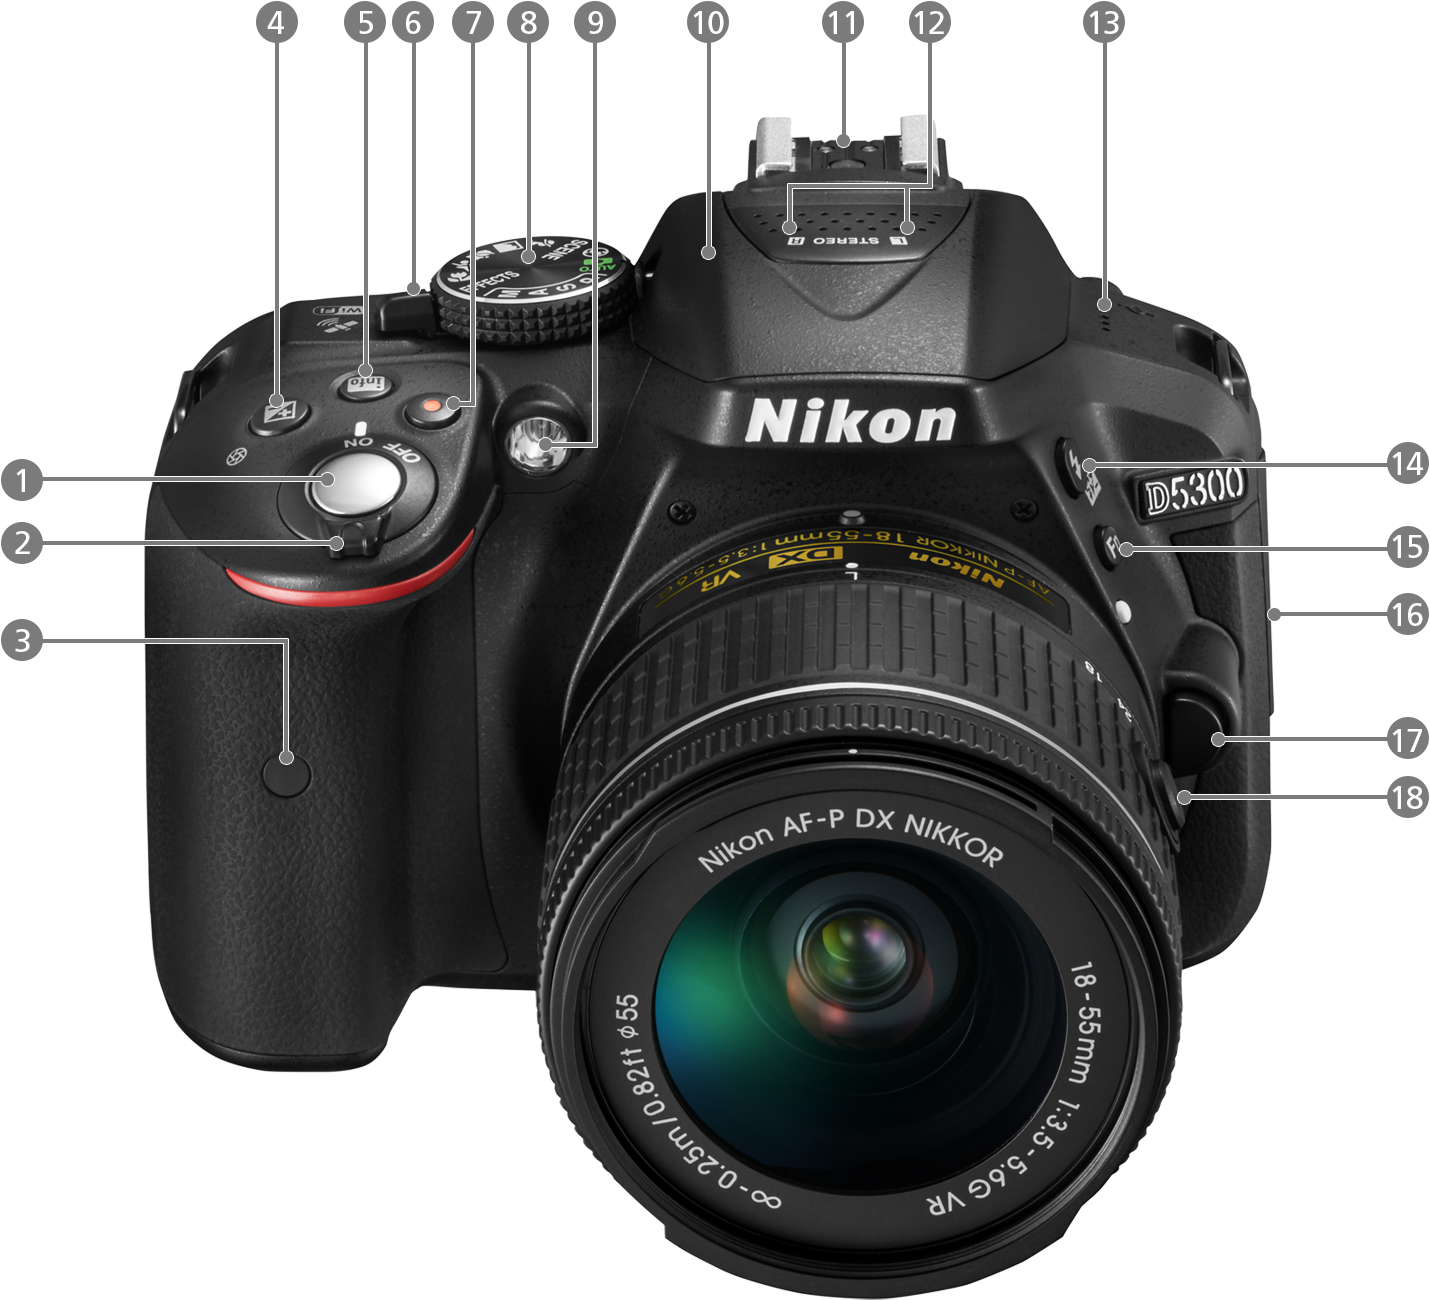 Nikon ニコン D5300